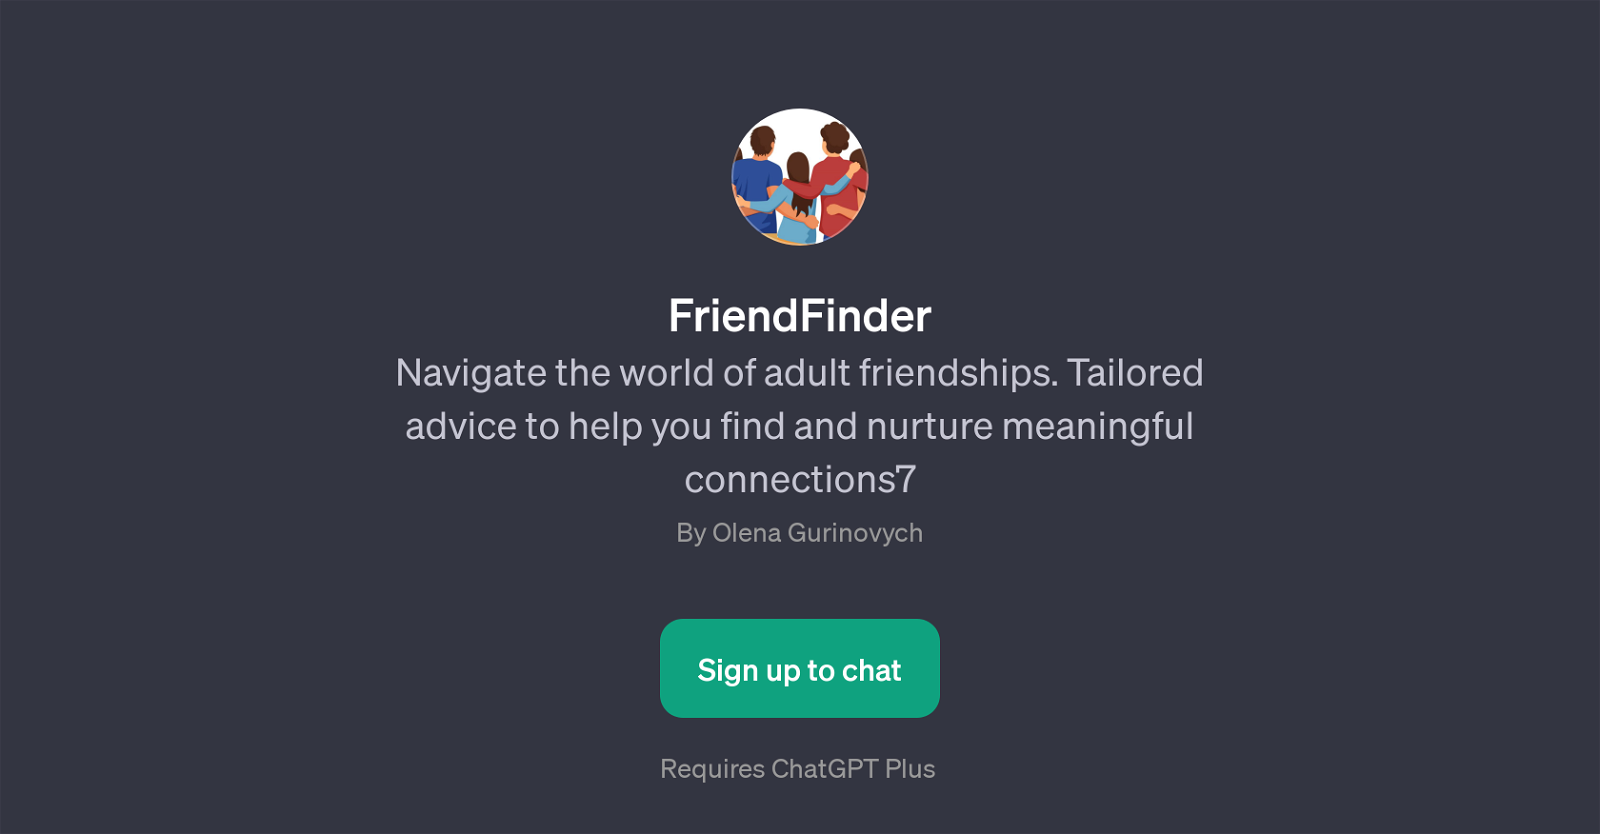 FriendFinder website